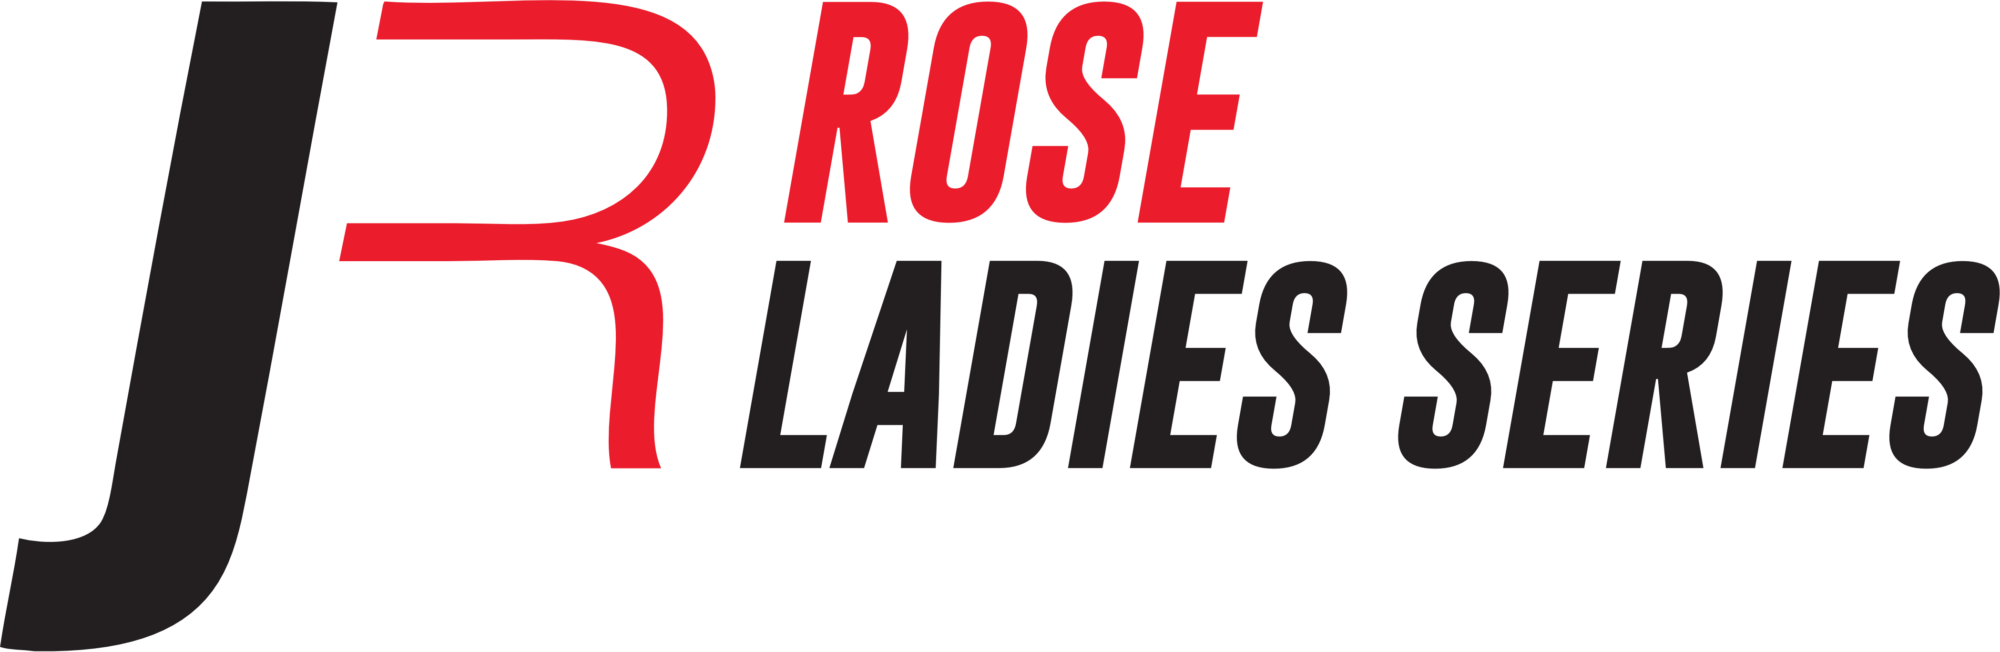 JR Rose Ladies Series logo